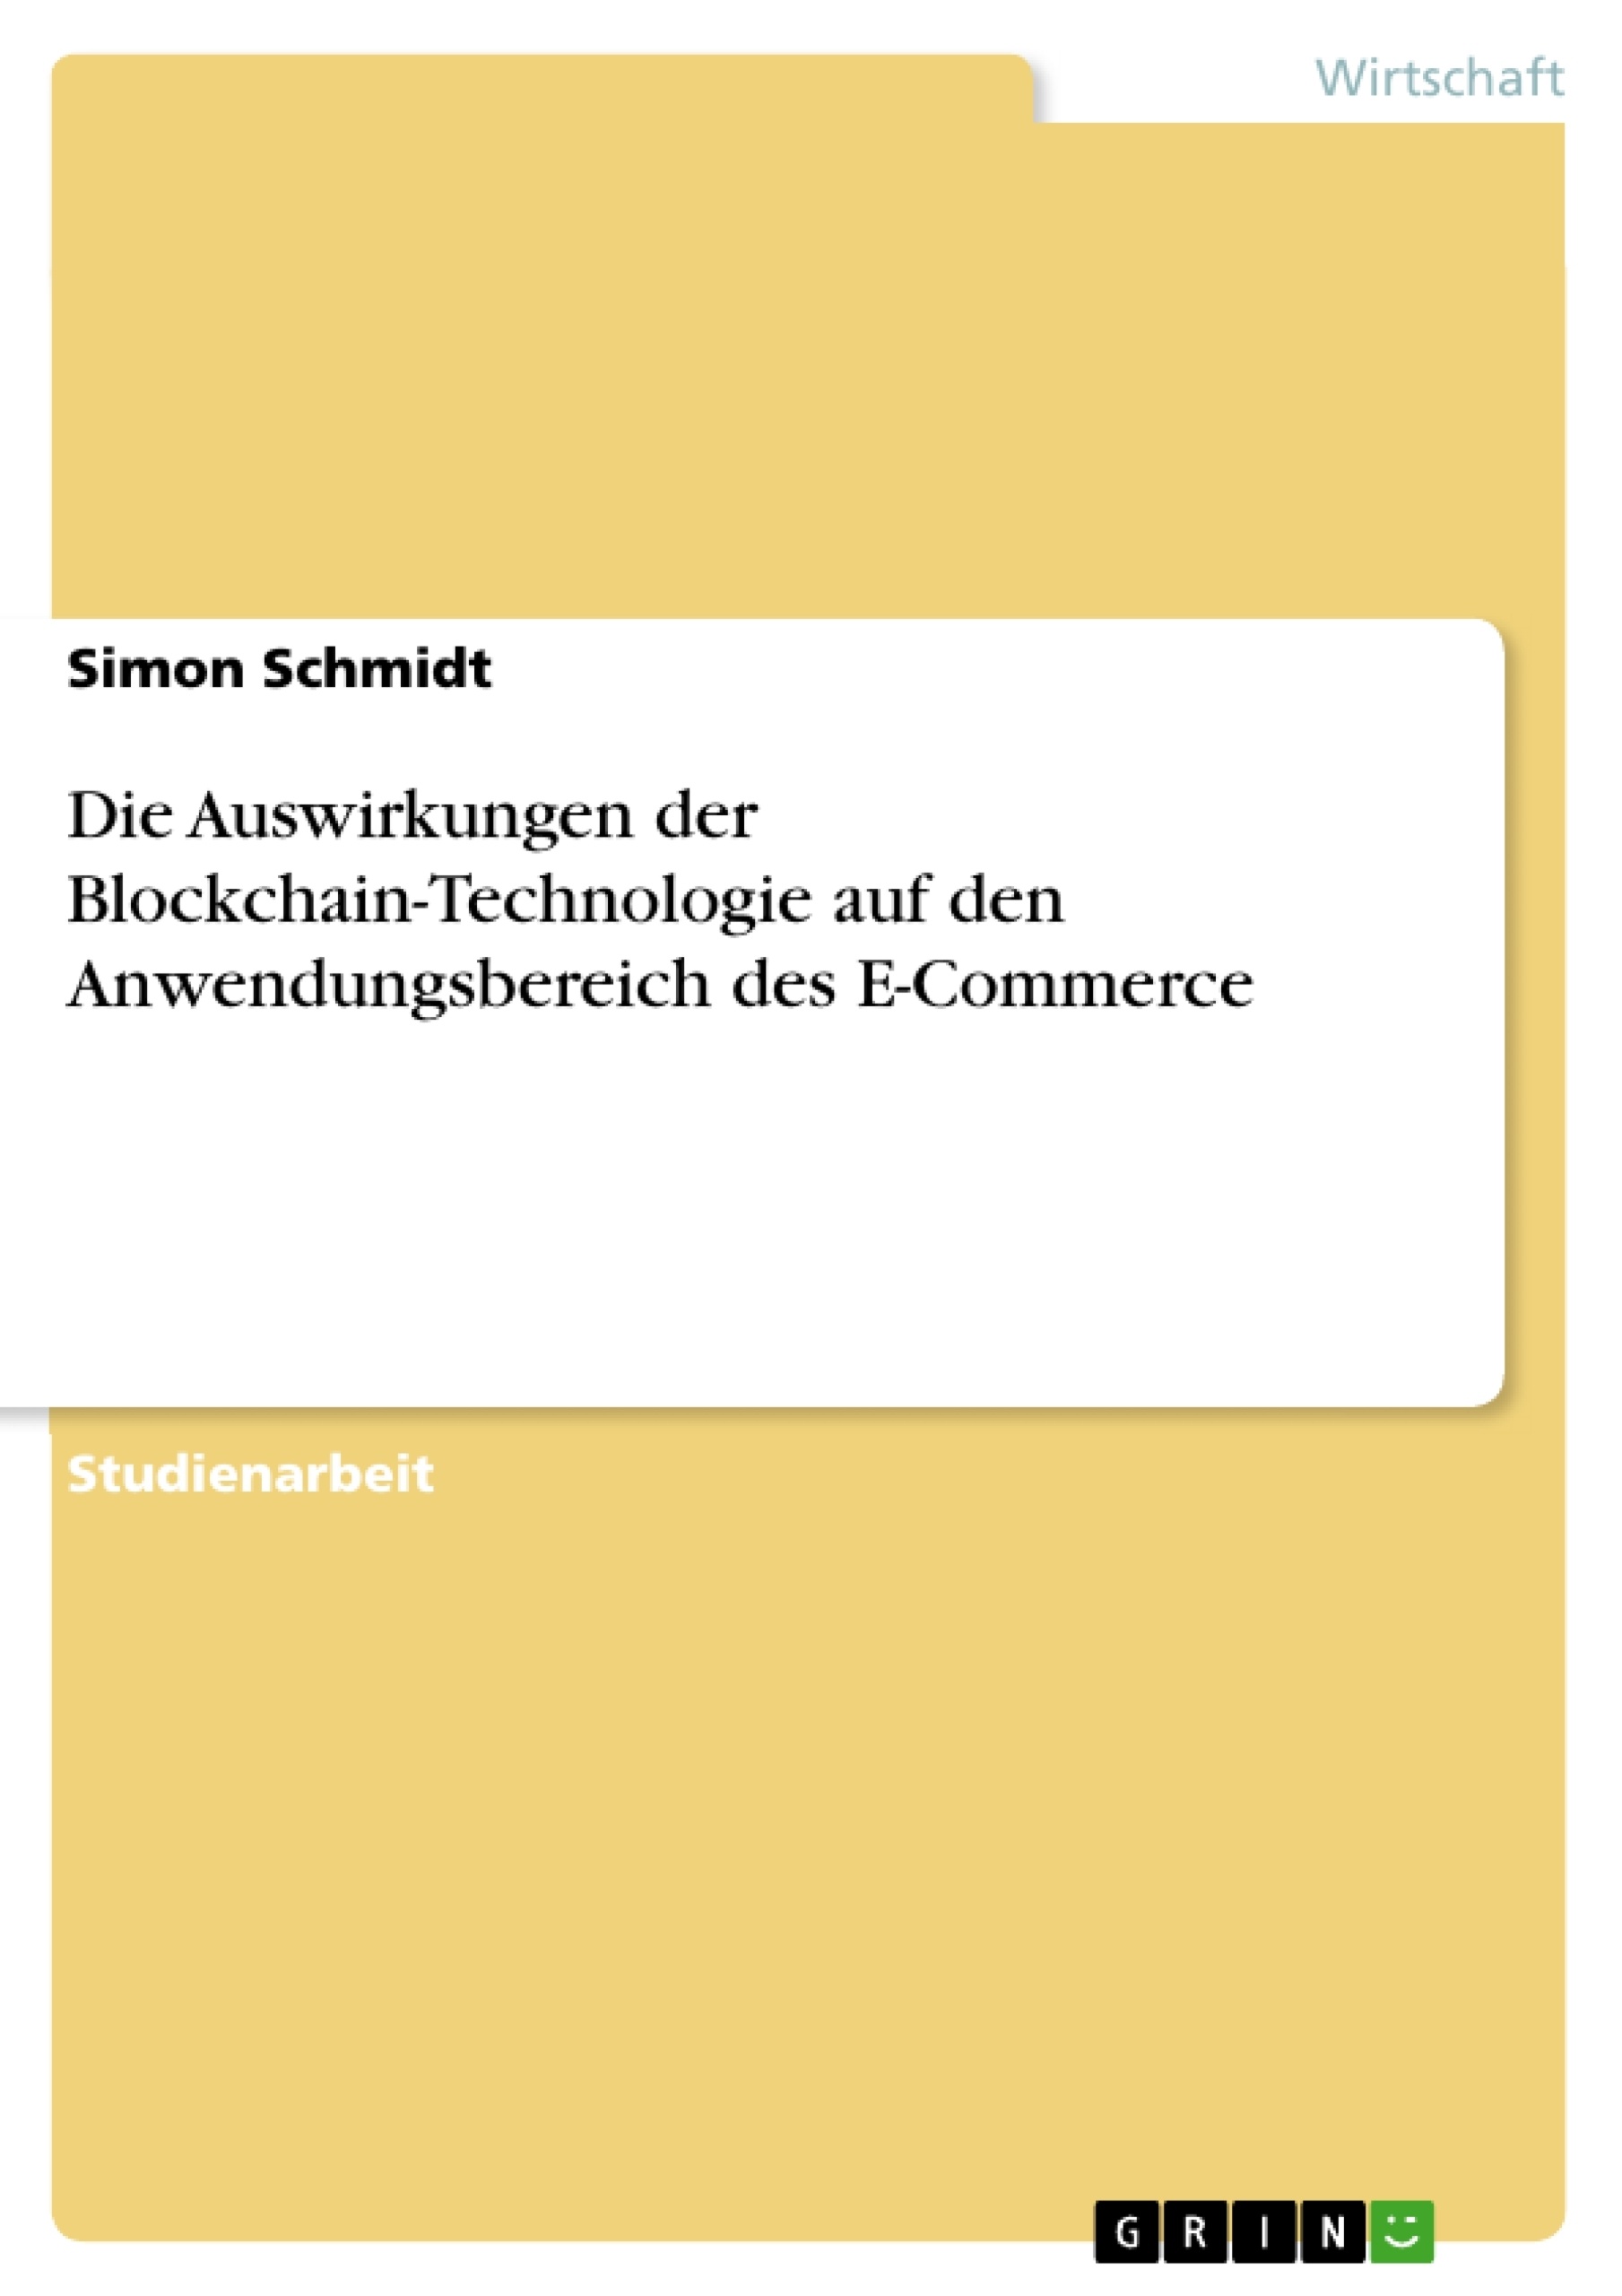 Title: Die Auswirkungen der Blockchain-Technologie auf den Anwendungsbereich des E-Commerce